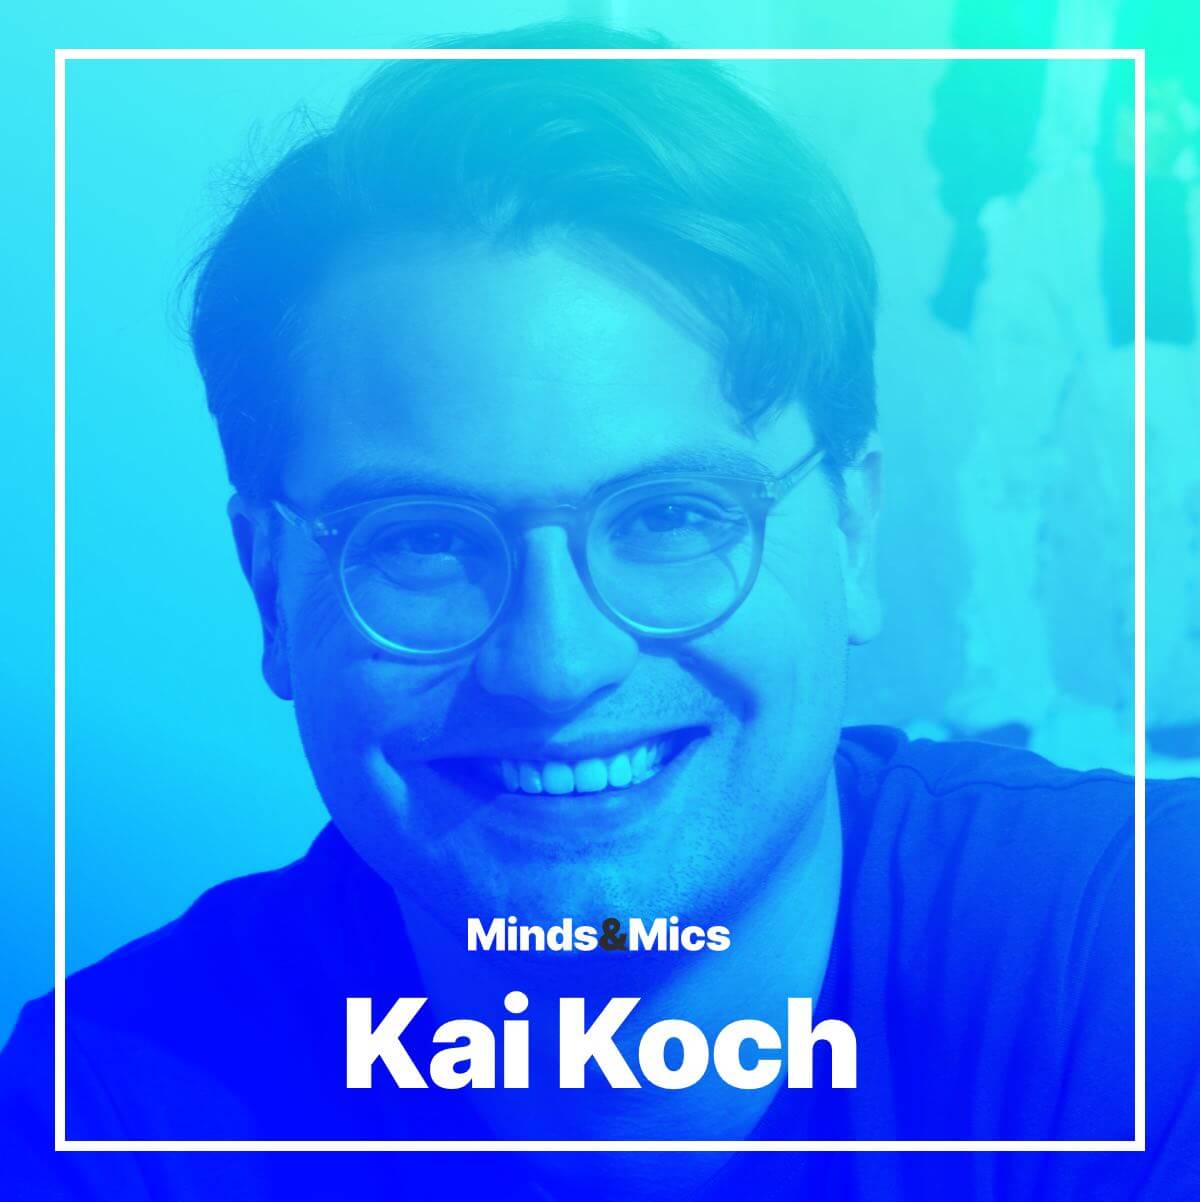 Kai Koch Nick Minds and Mics small